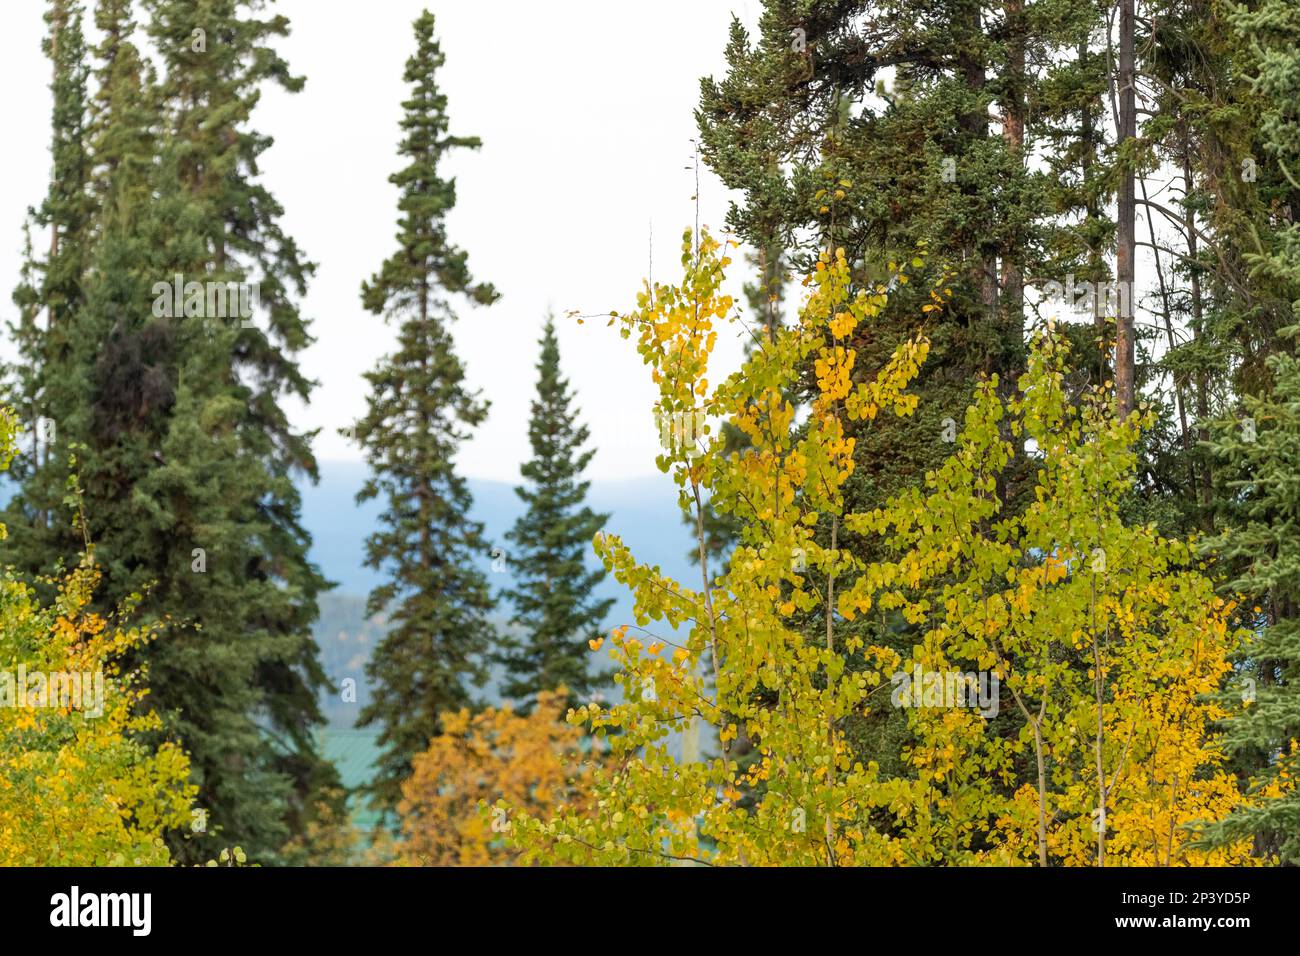 Magnifique paysage d'automne dans le nord du Canada en septembre avec des arbres dorés couvrant les vues panoramiques du parc national Kluane. Banque D'Images